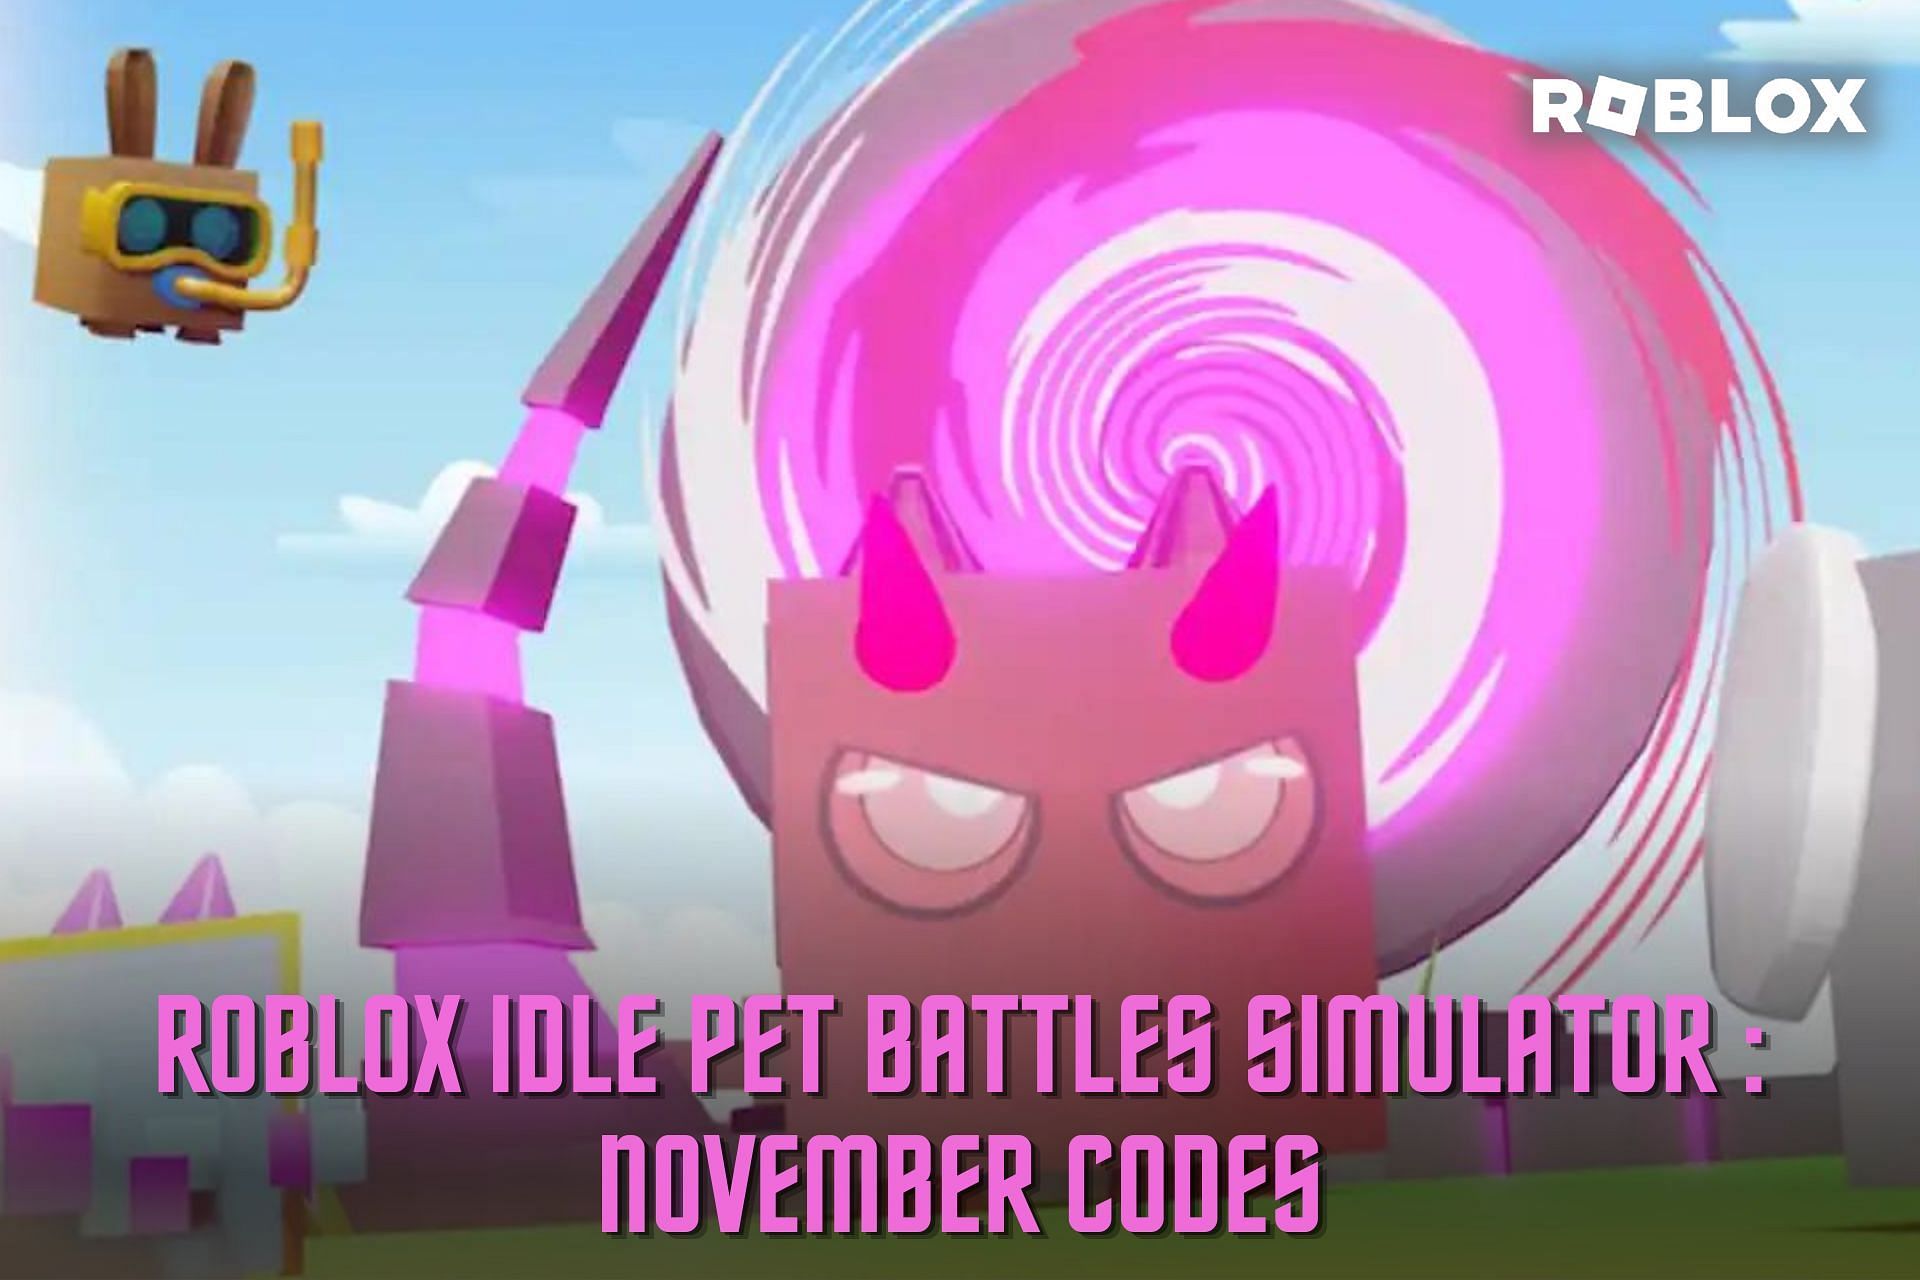 Roblox Texting Simulator Codes (November 2022)